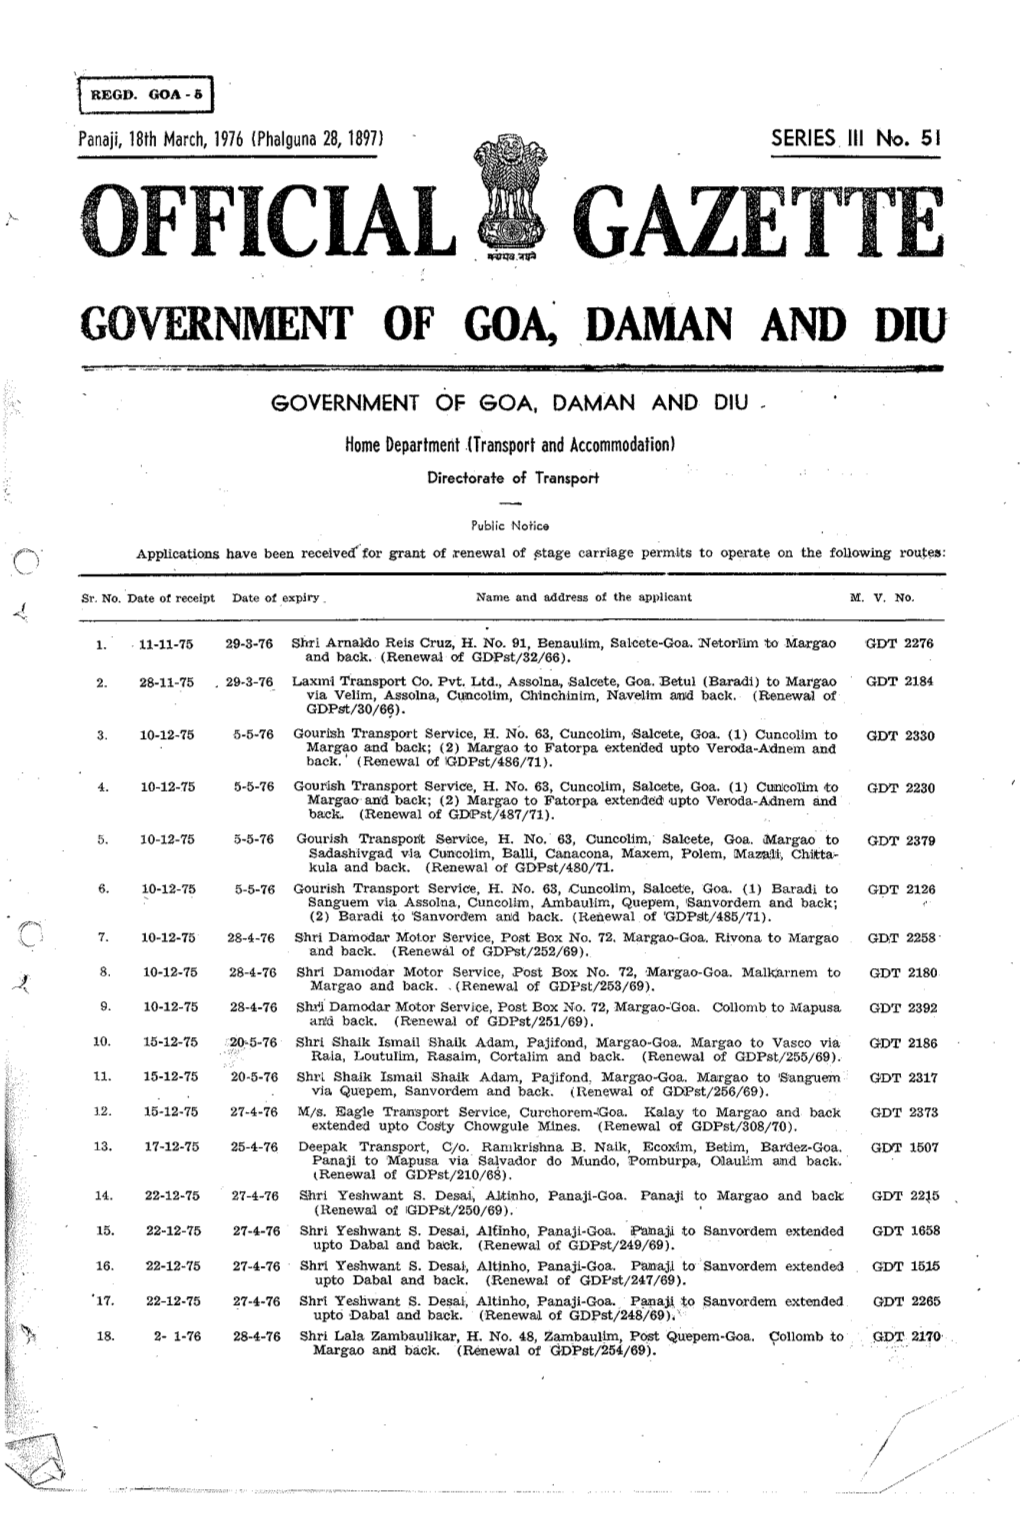 Official Gazette Government of Go~Daman and Diu